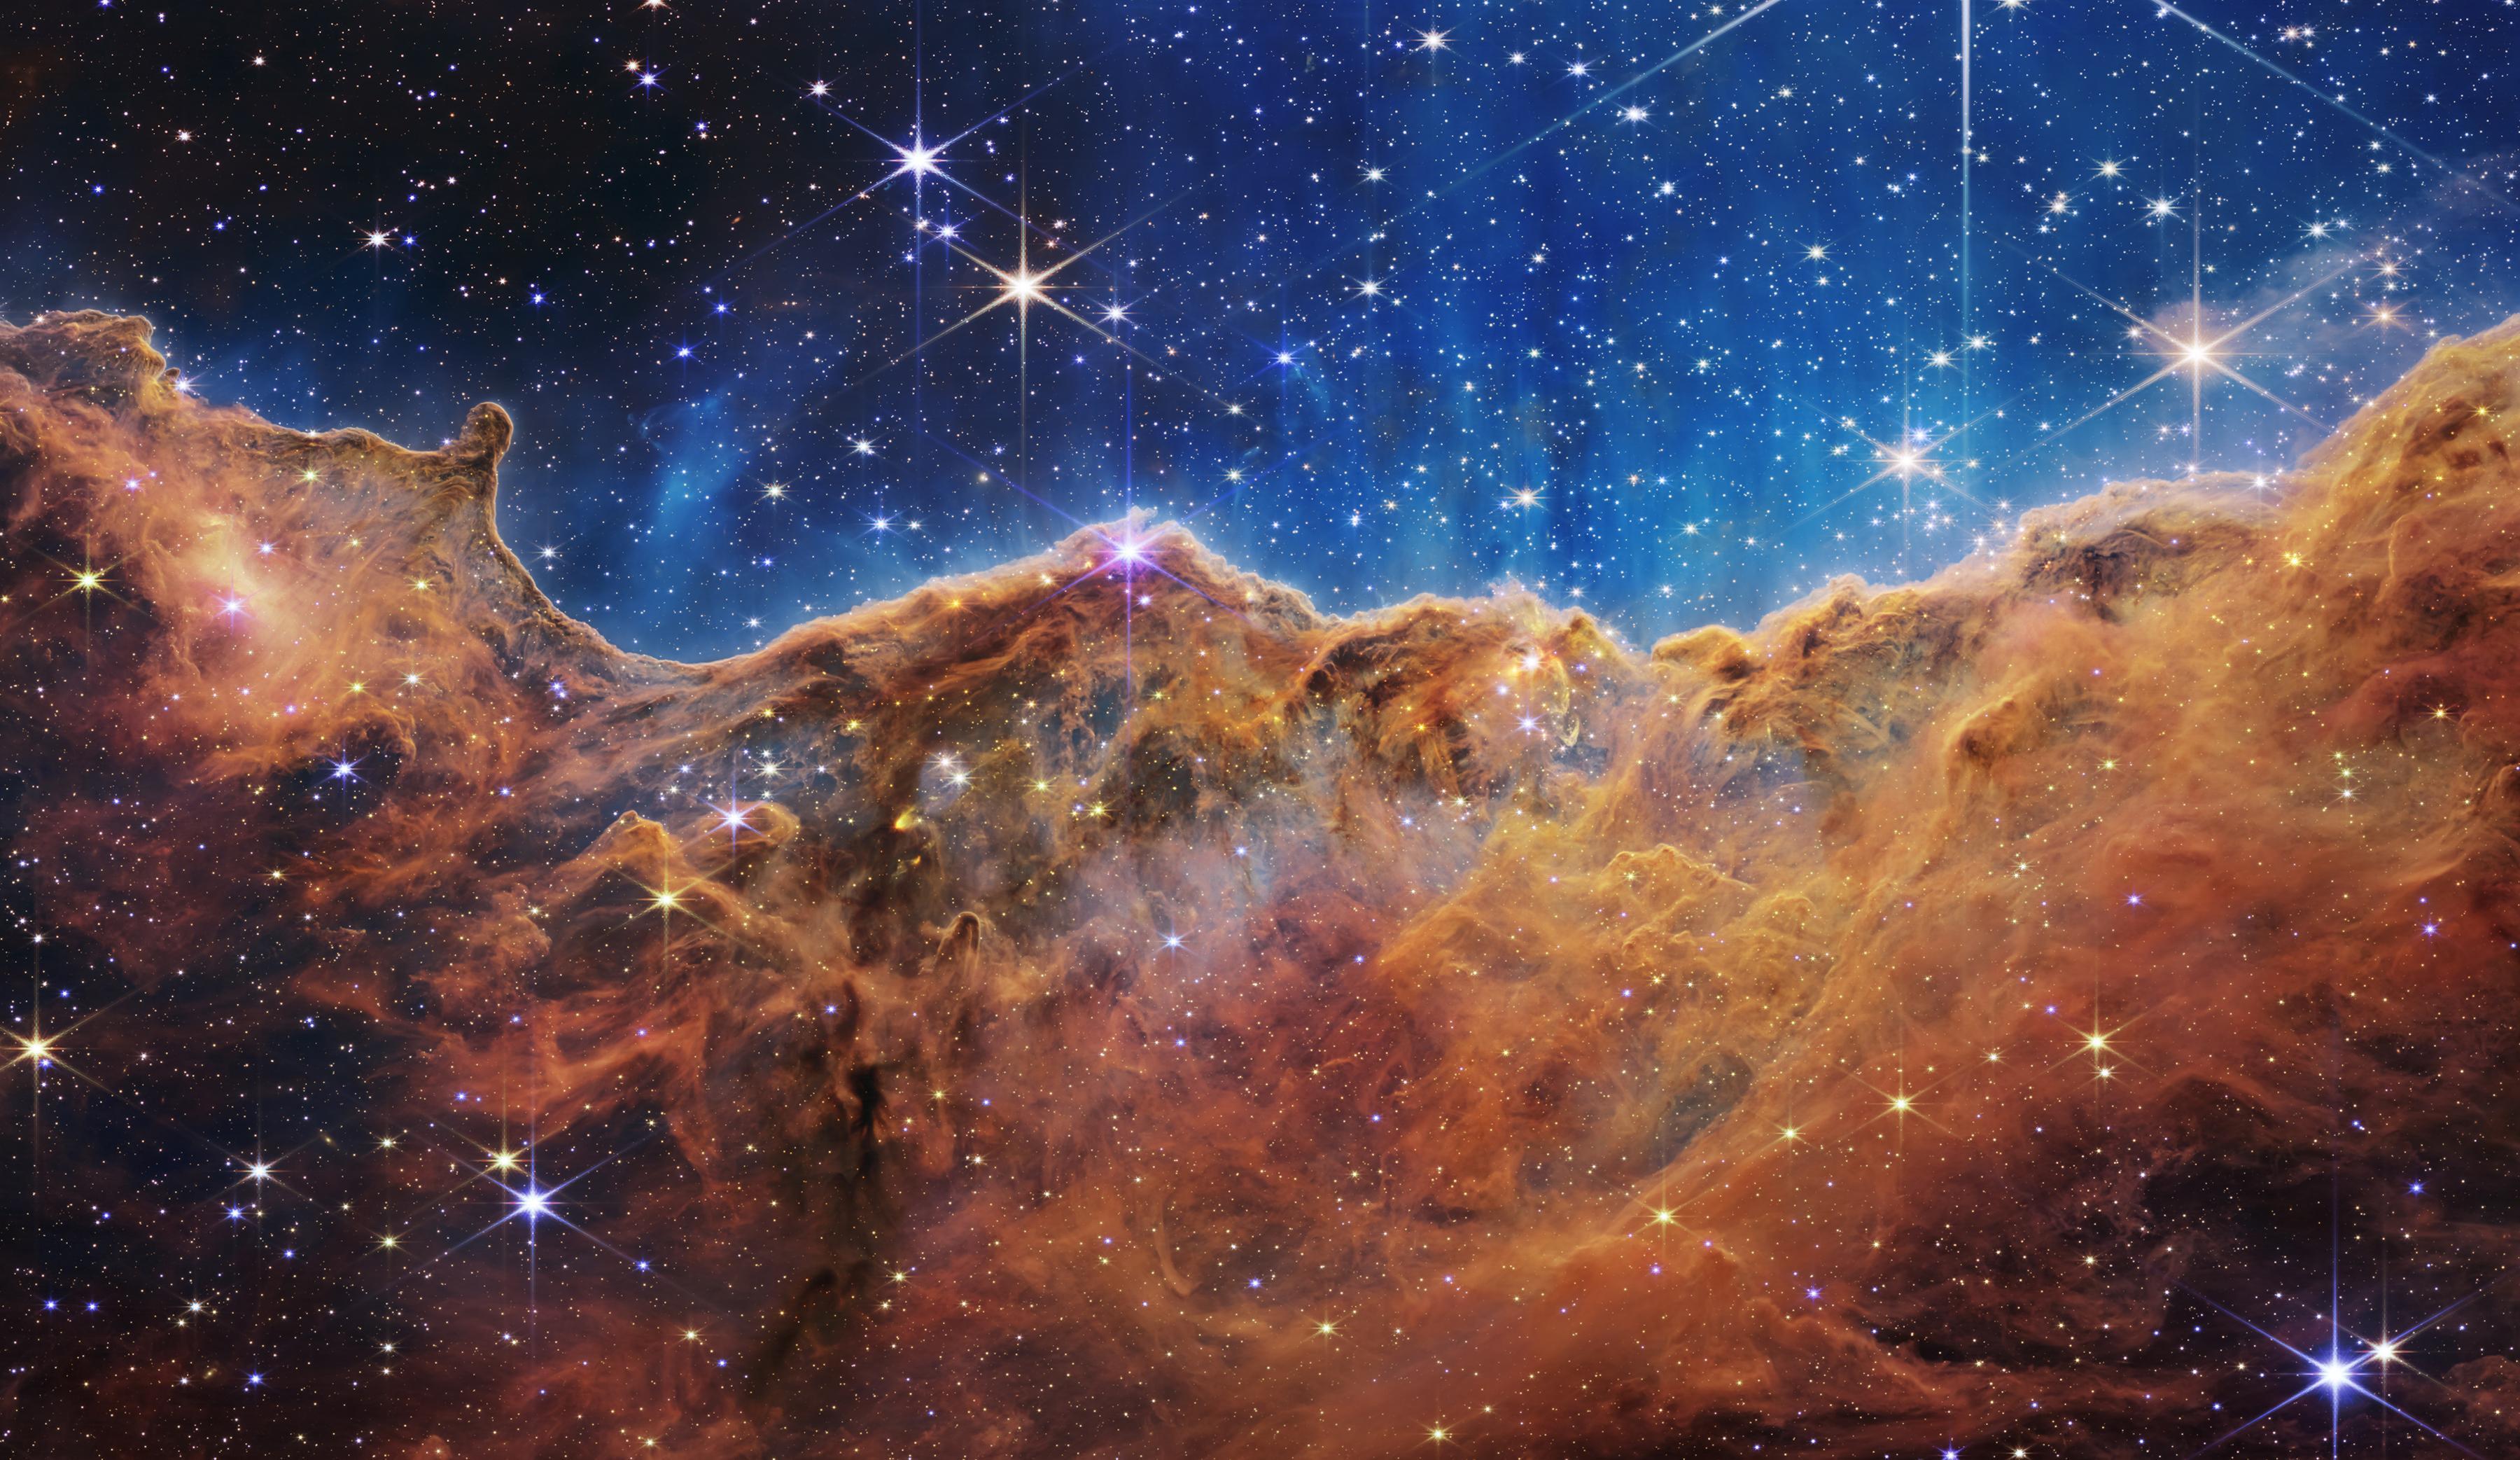 Imagen del borde de una región cercana y joven donde se forman estrellas, llamada NGC 3324, en la Nebulosa de Carina, que se asemeja a un paisaje de "montañas" y "valles" salpicados de estrellas brillantes.